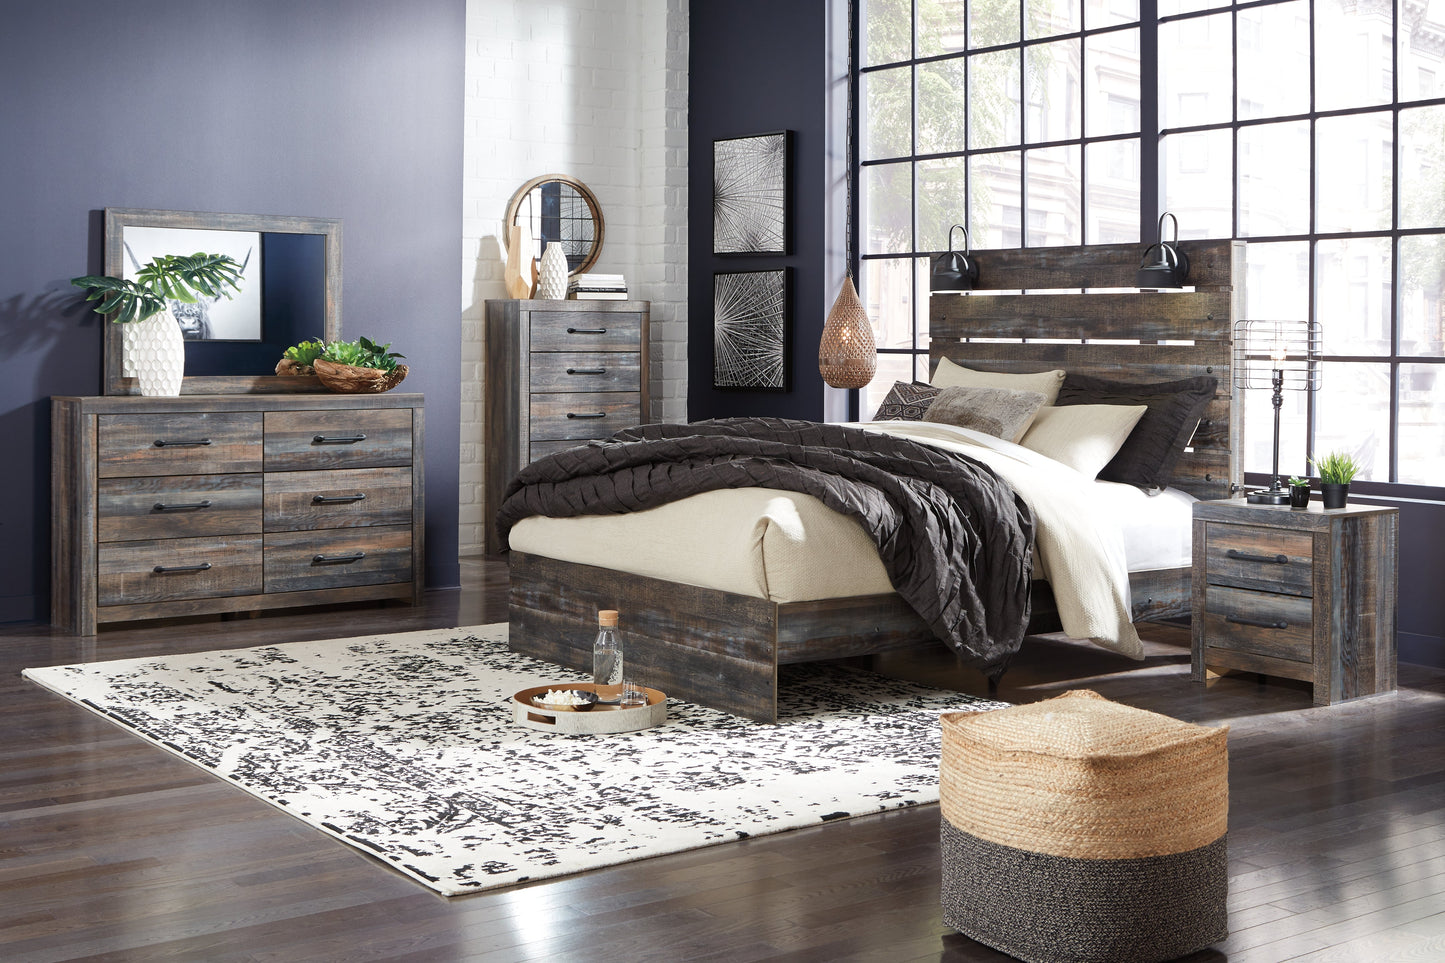 Drystan Multi Queen Panel Bedroom Set with Dresser, Mirror, Chest and Nightstand